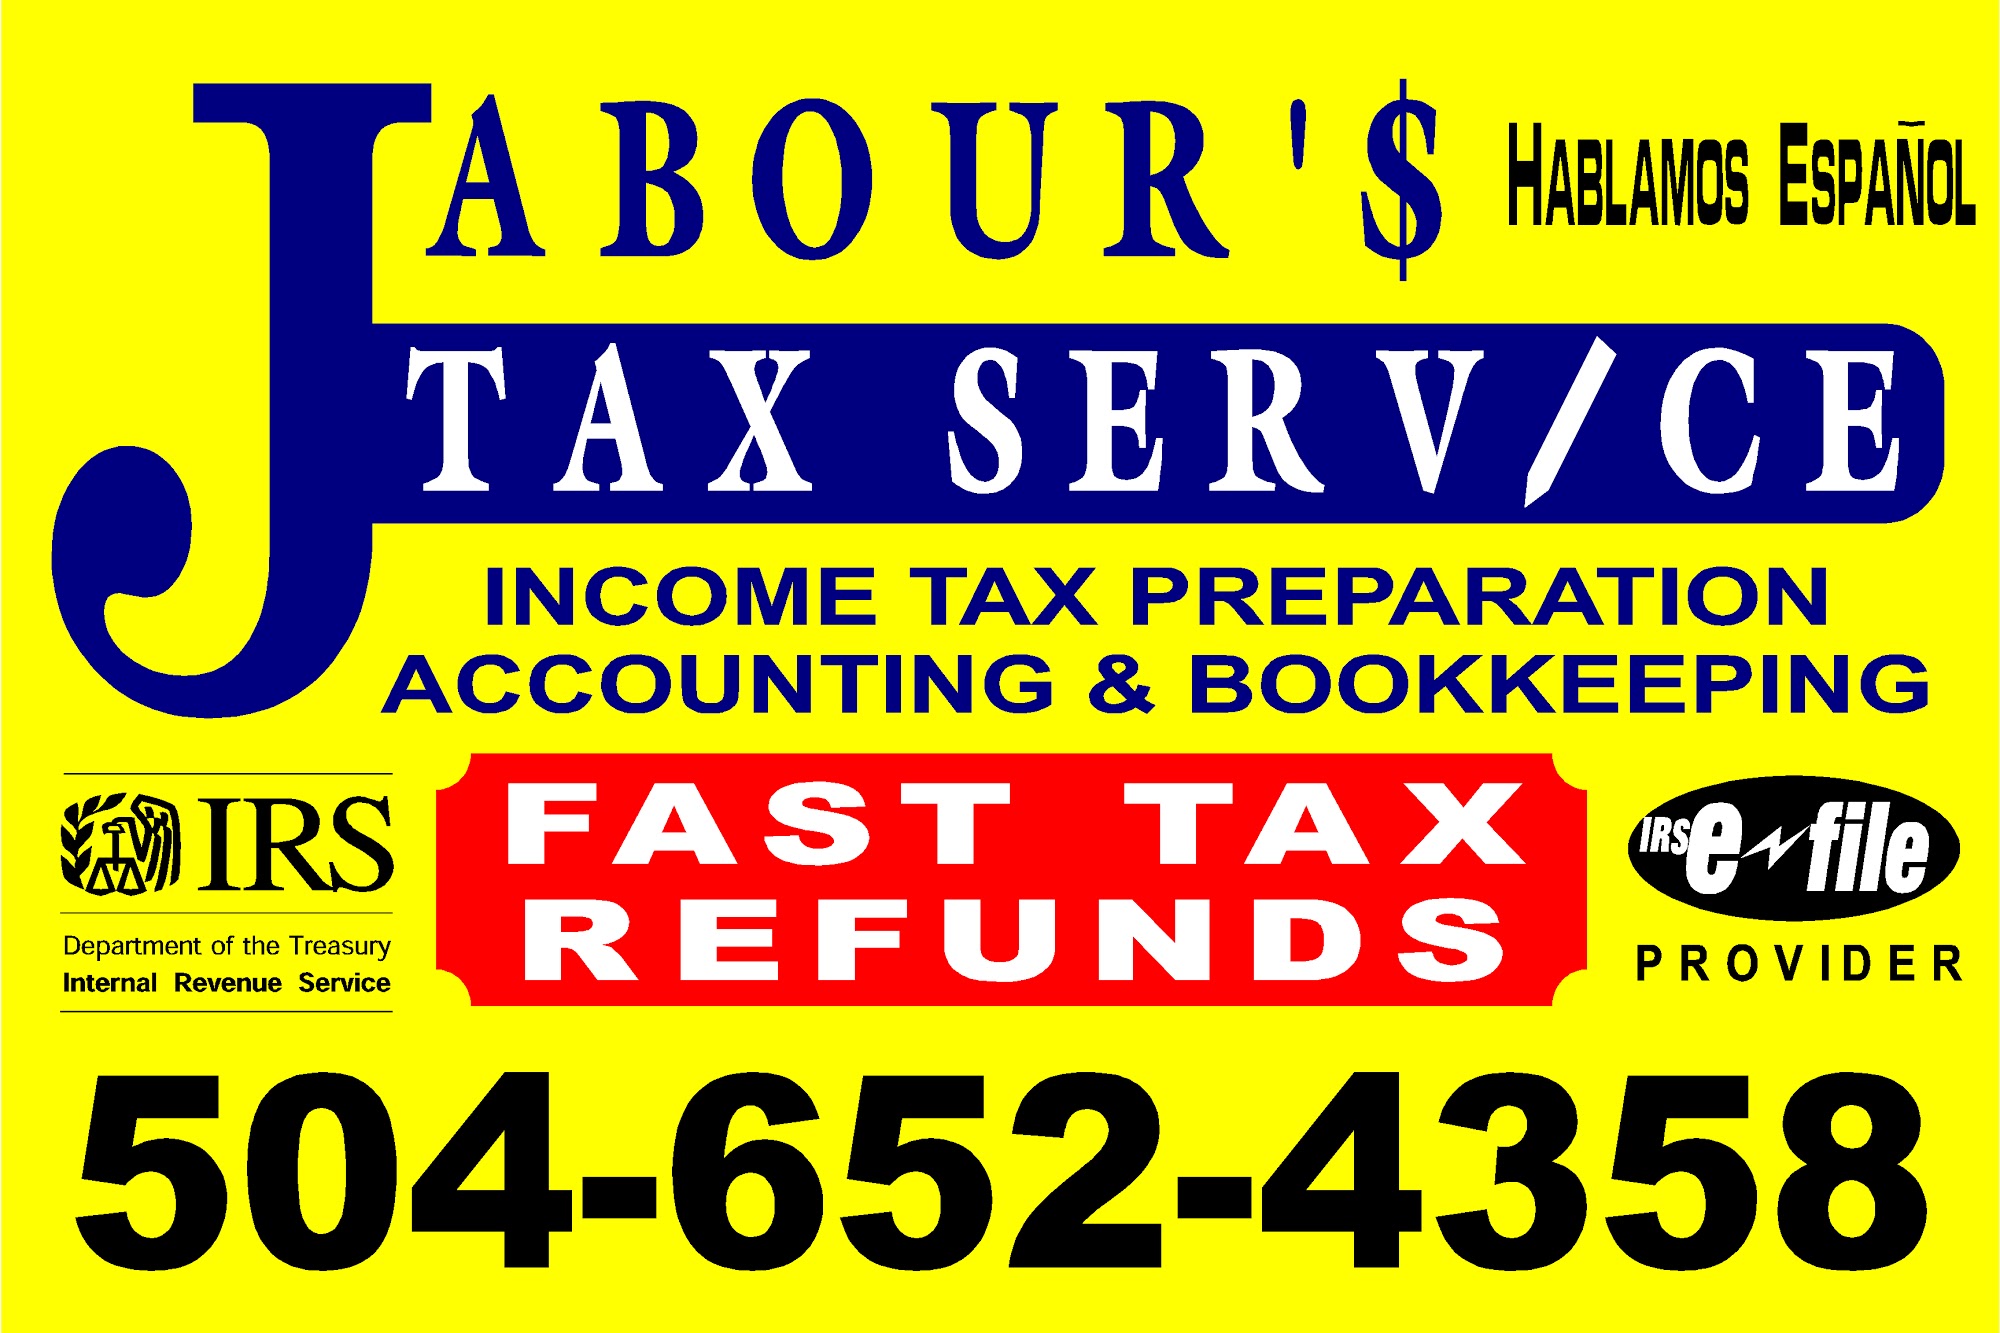 Jabour Tax Services